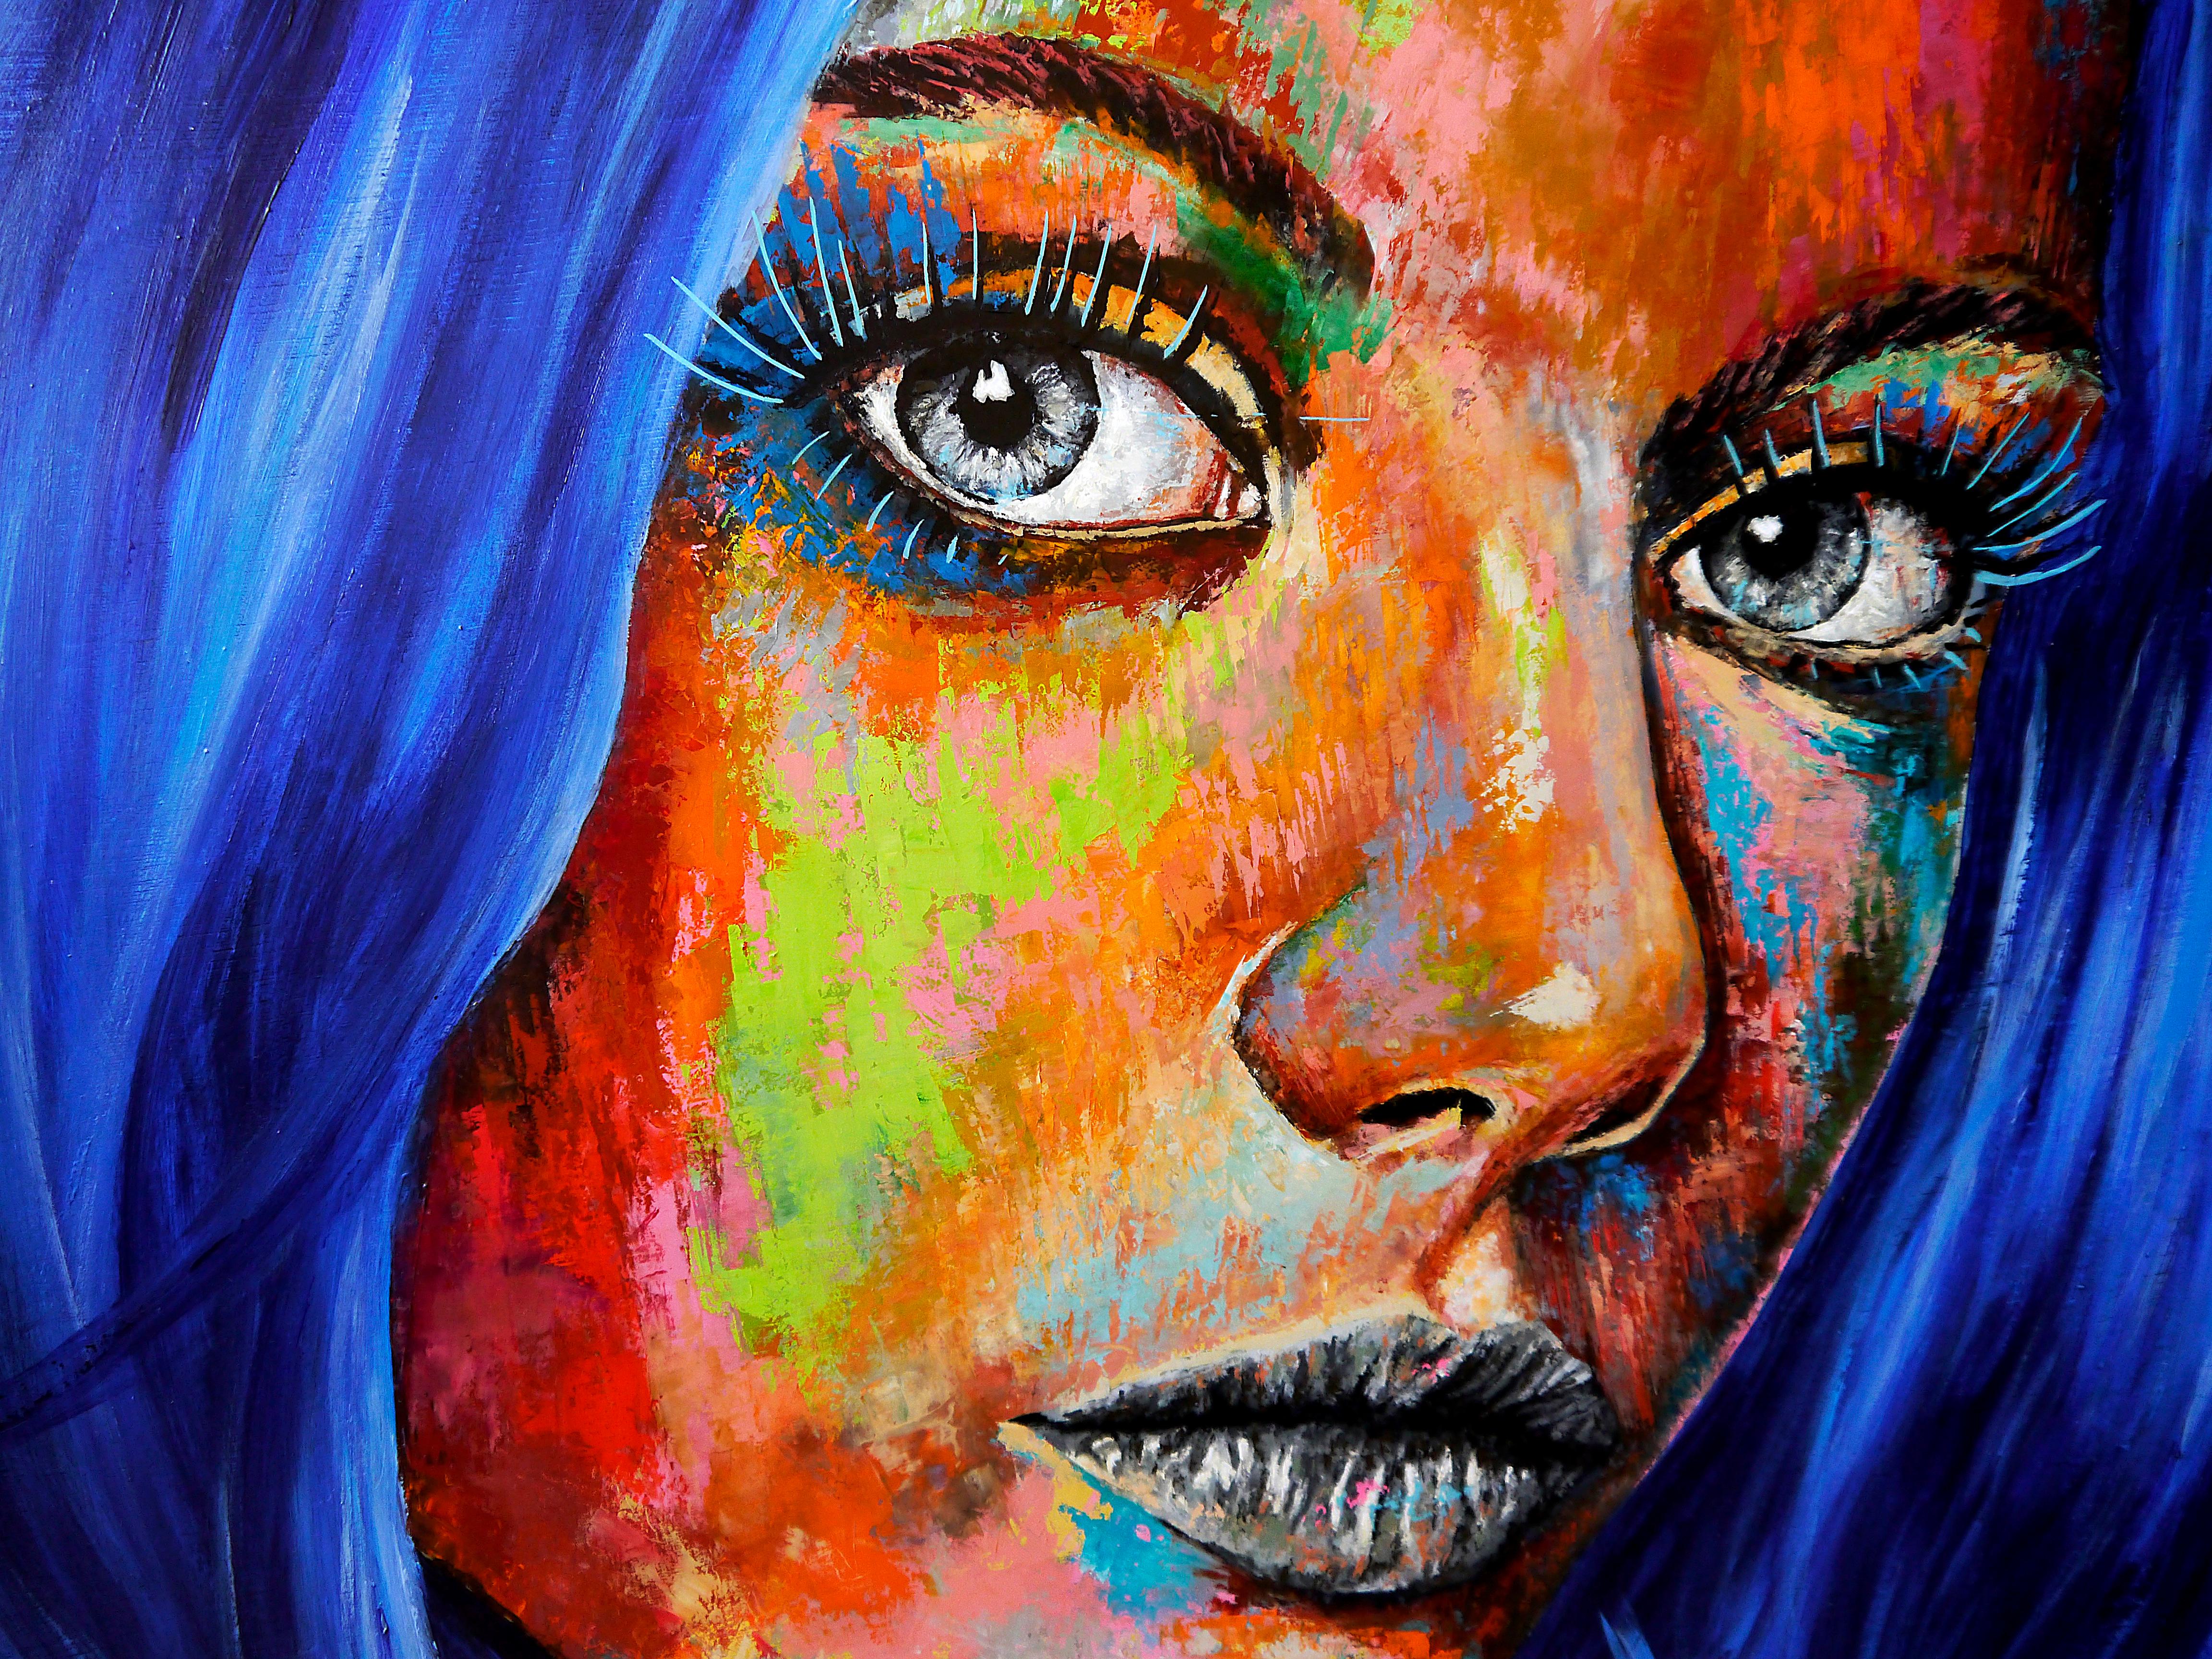 PPachamama Glósóli 05

Portrait en gros plan d'une femme aux cheveux bleus. Un regard vibrant et puissant.
Technique : huile, acrylique et encre sur grande toile 120x80cm ■■ 47,2 x 31,7 inch

Analyse structurelle :
Comme les peintres